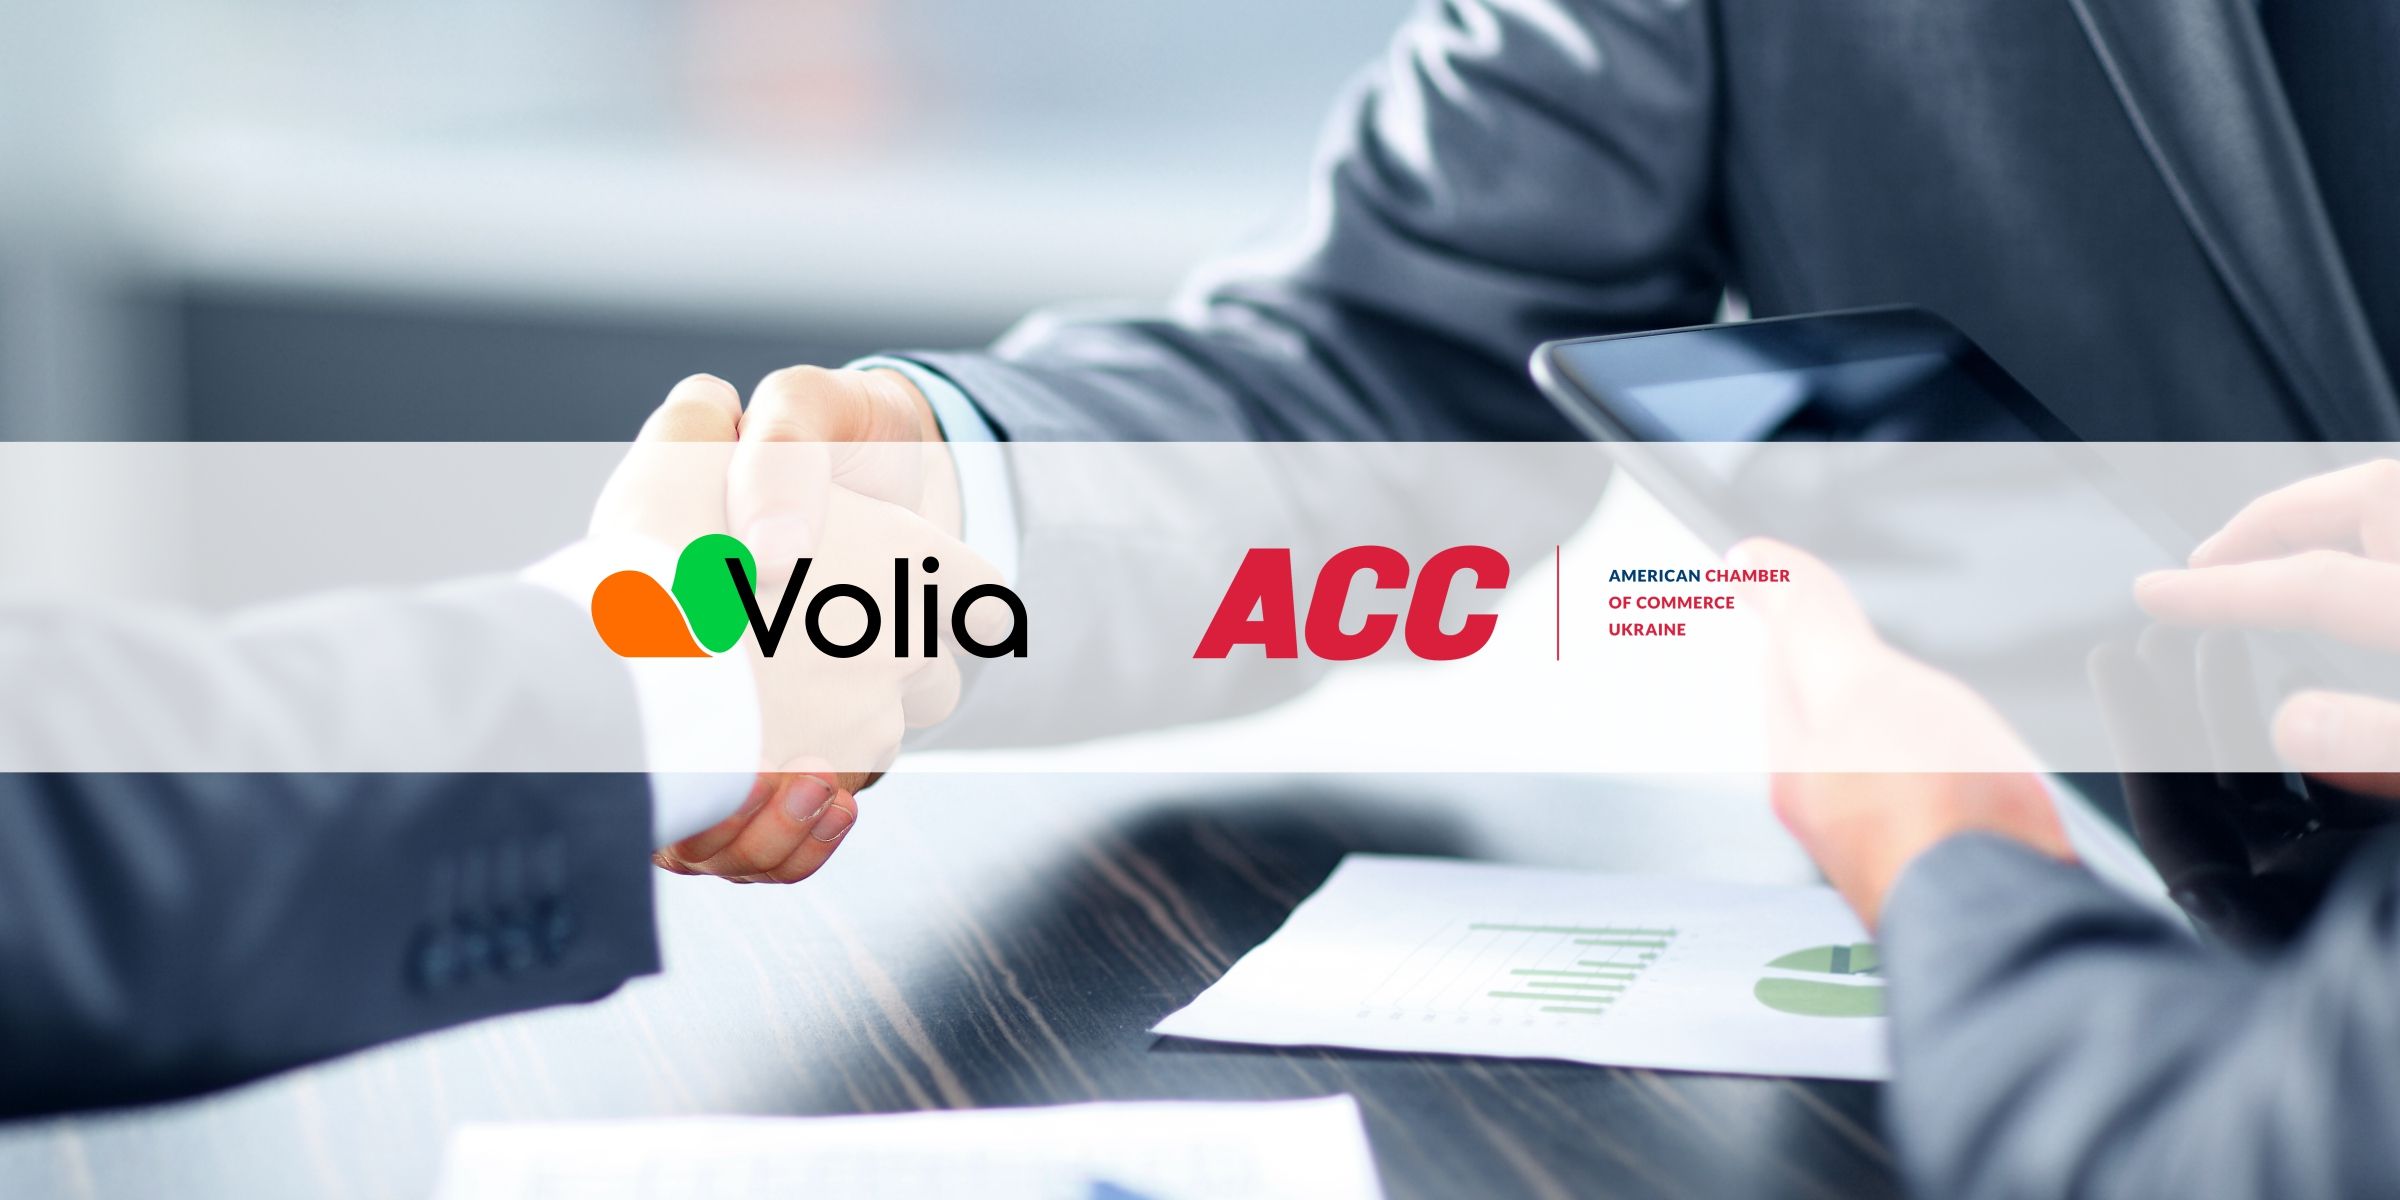 Volia доєдналася до Наглядової ради в рамках Комітету з питань медіа та комунікацій (ACC)